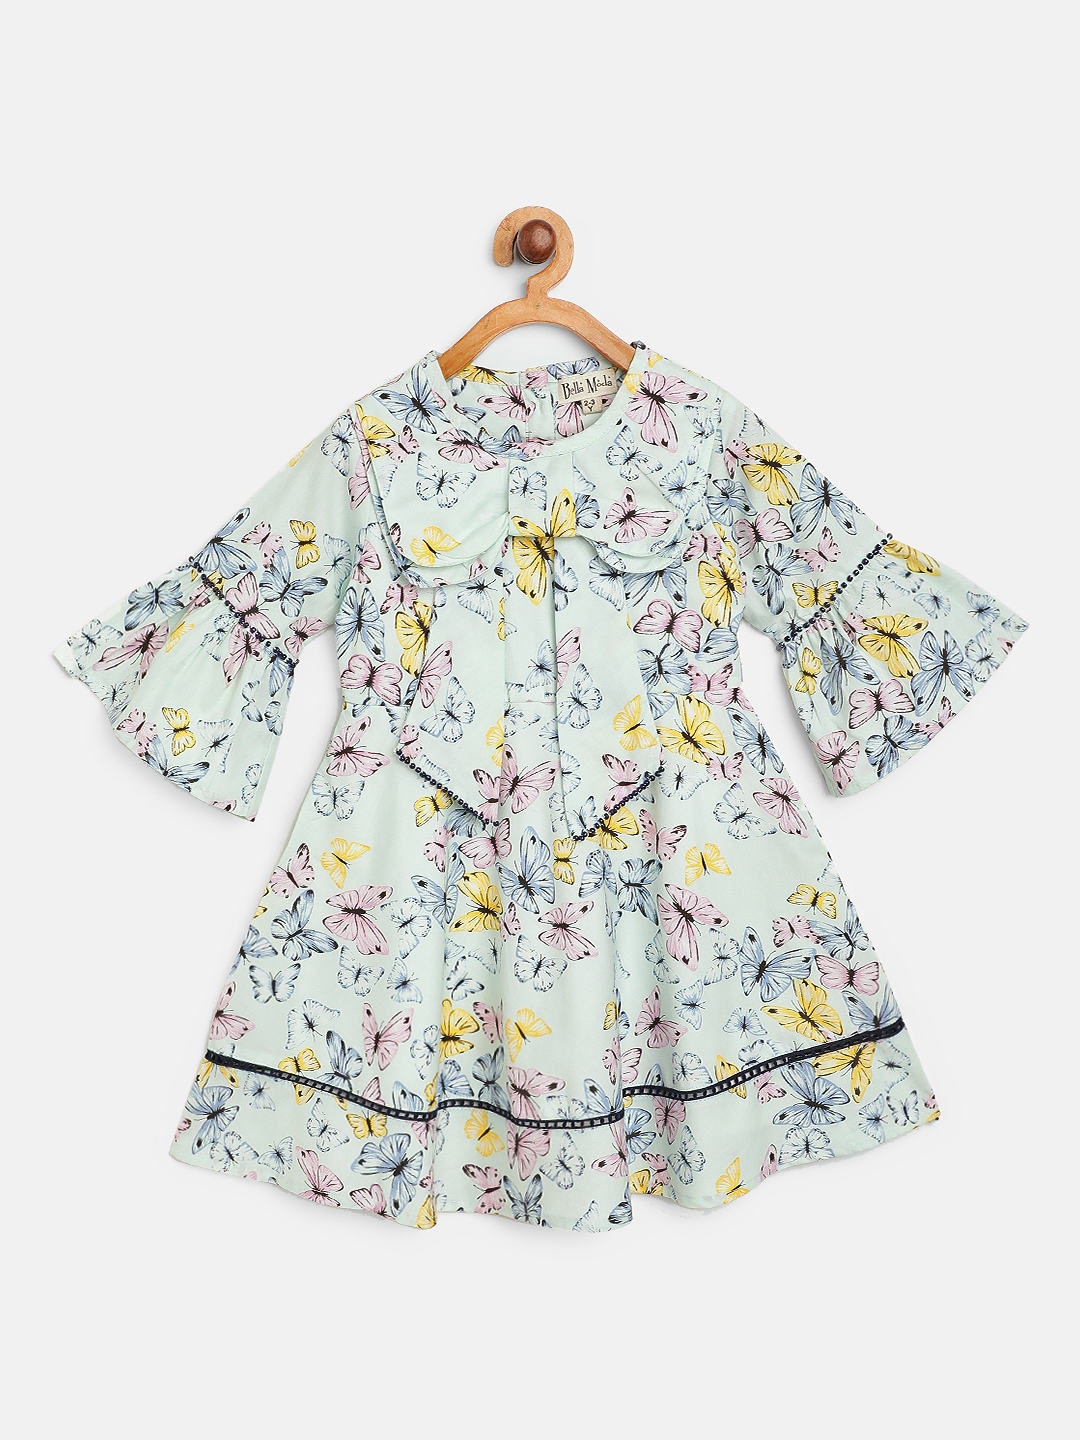 Buy Bella Moda Girls Blue & Pink Butterflies Print A Line Dress ...